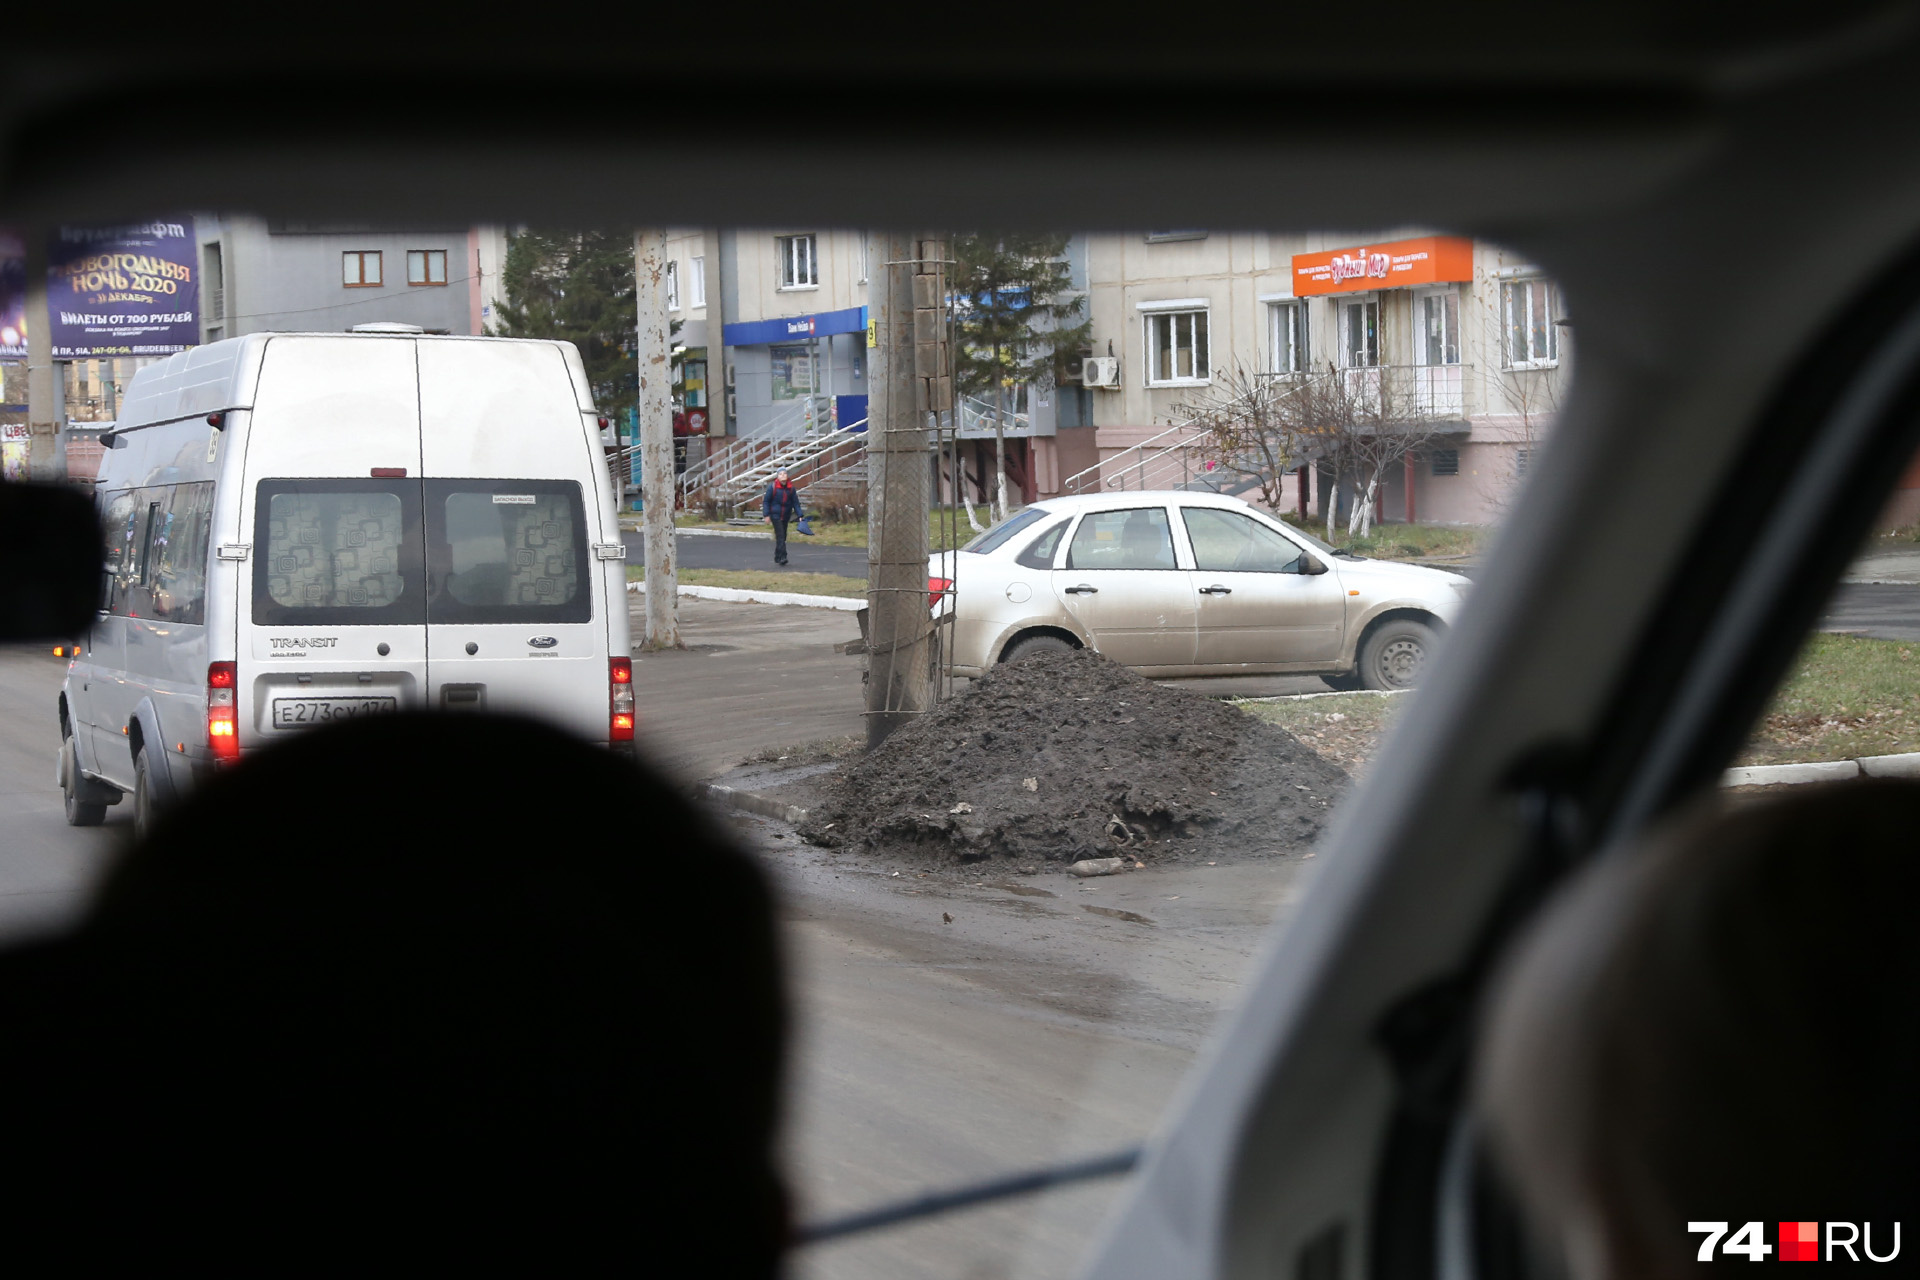 Отправляемся к следующему объекту — на Комсомольском проспекте. Вдоль дороги встречаются «тефтелевы кучи», но сегодня не они главные герои дня